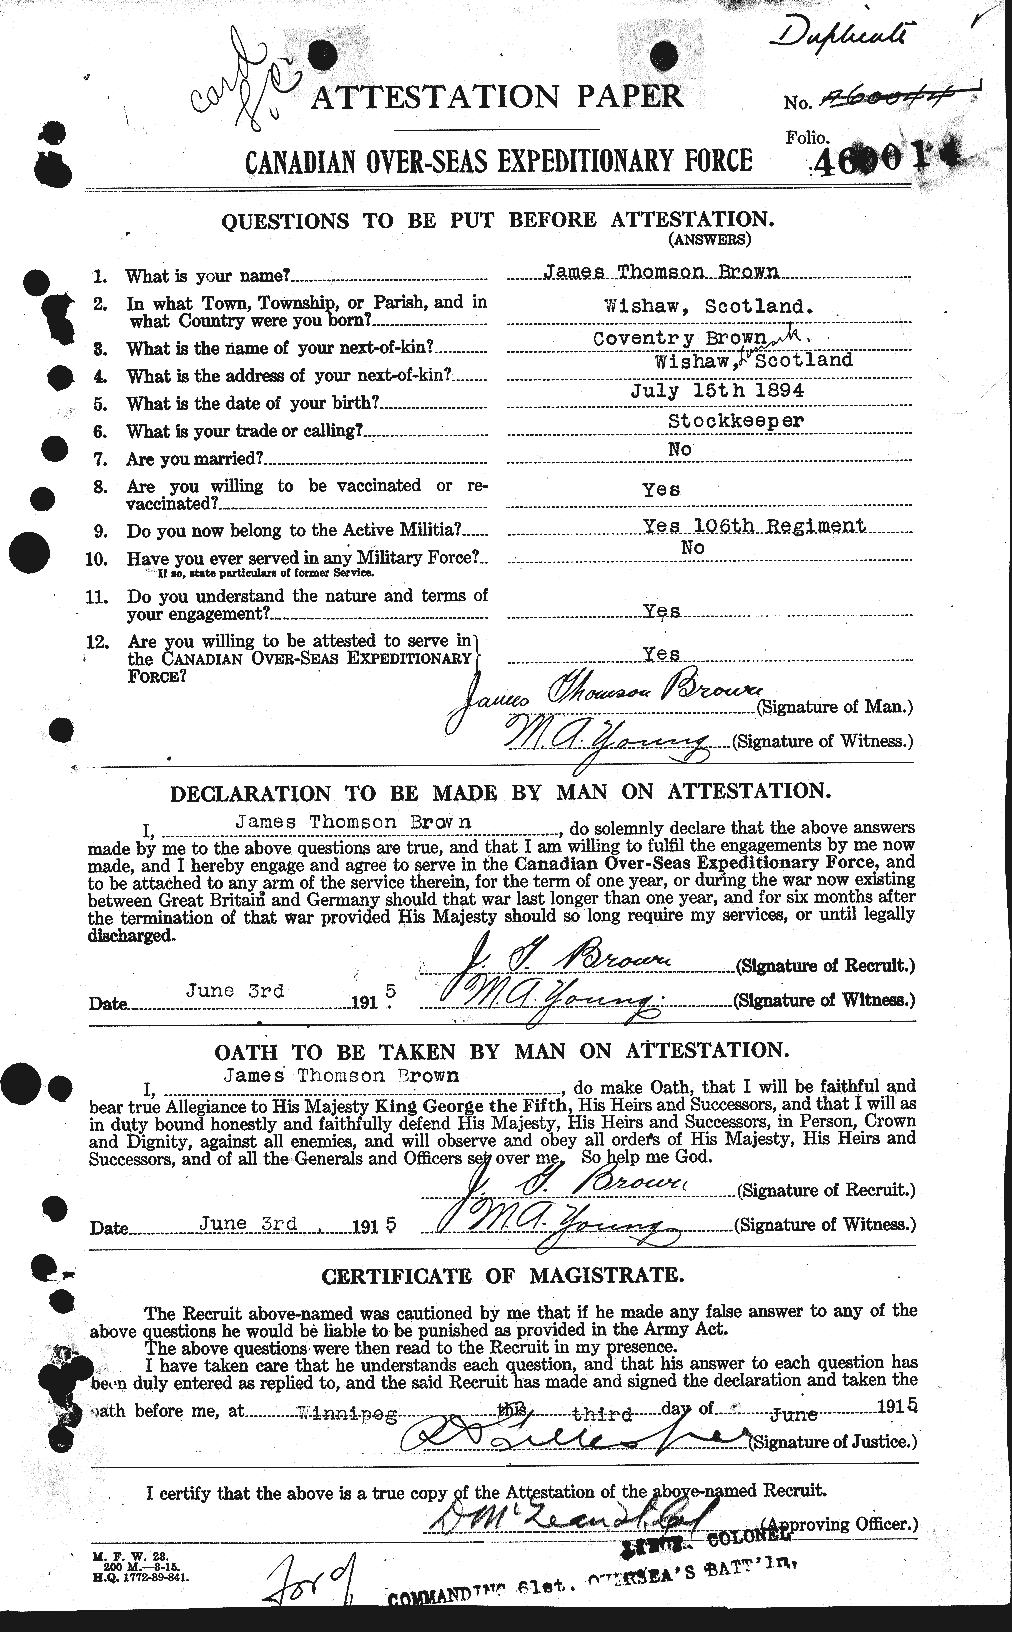 Dossiers du Personnel de la Première Guerre mondiale - CEC 269591a